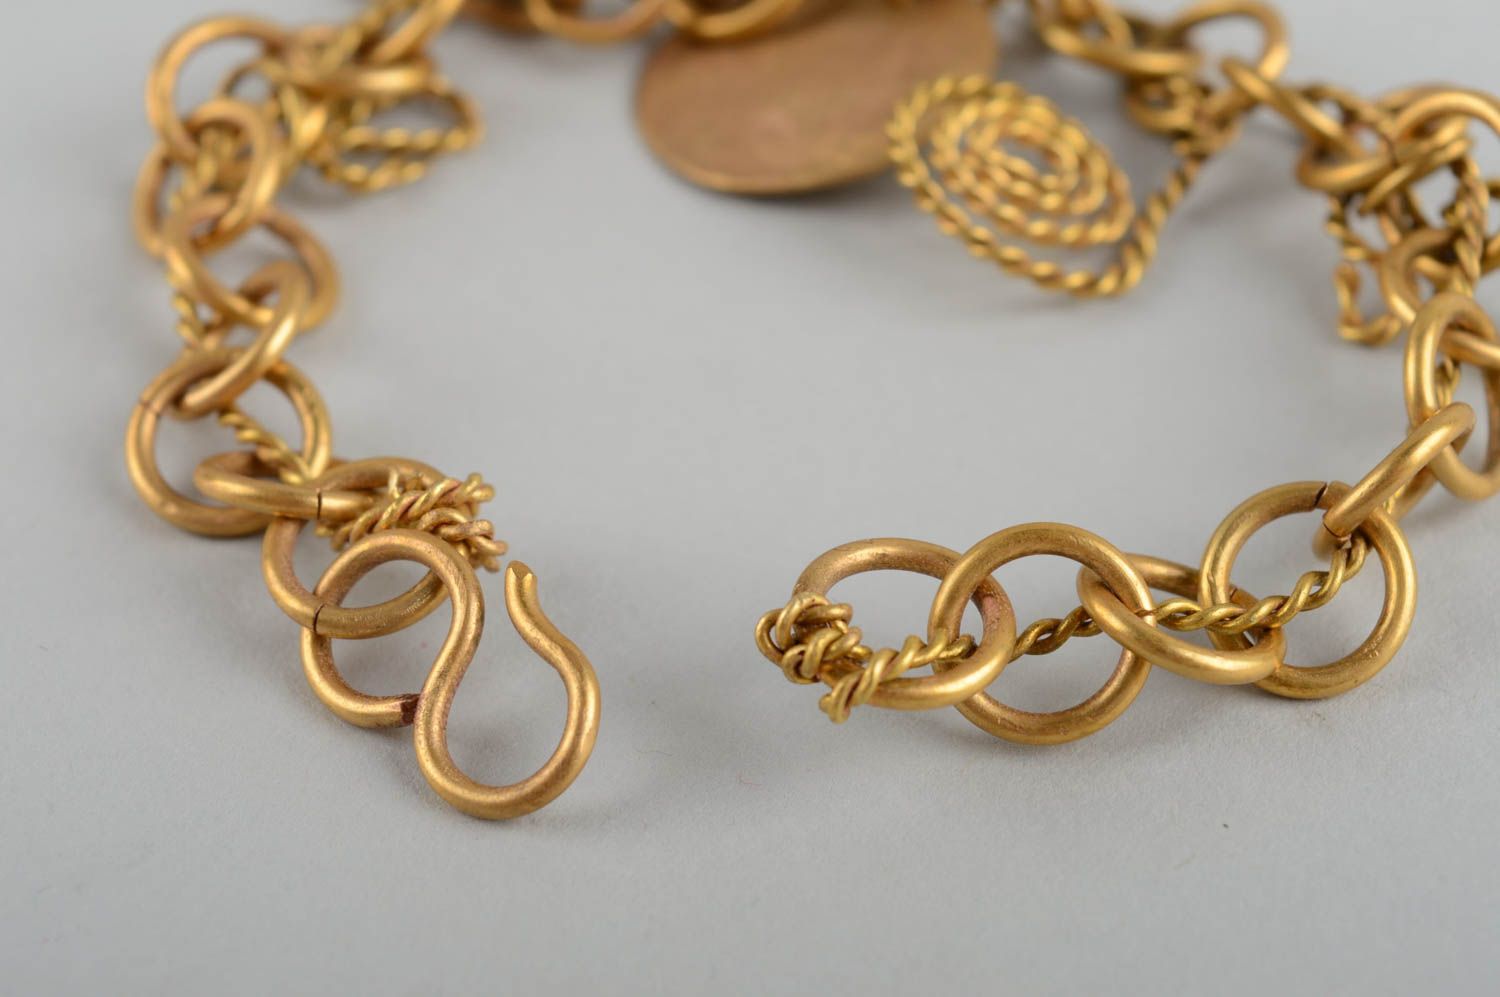 Handmade bracelet metal bracelet metal jewelry best gifts for women photo 5